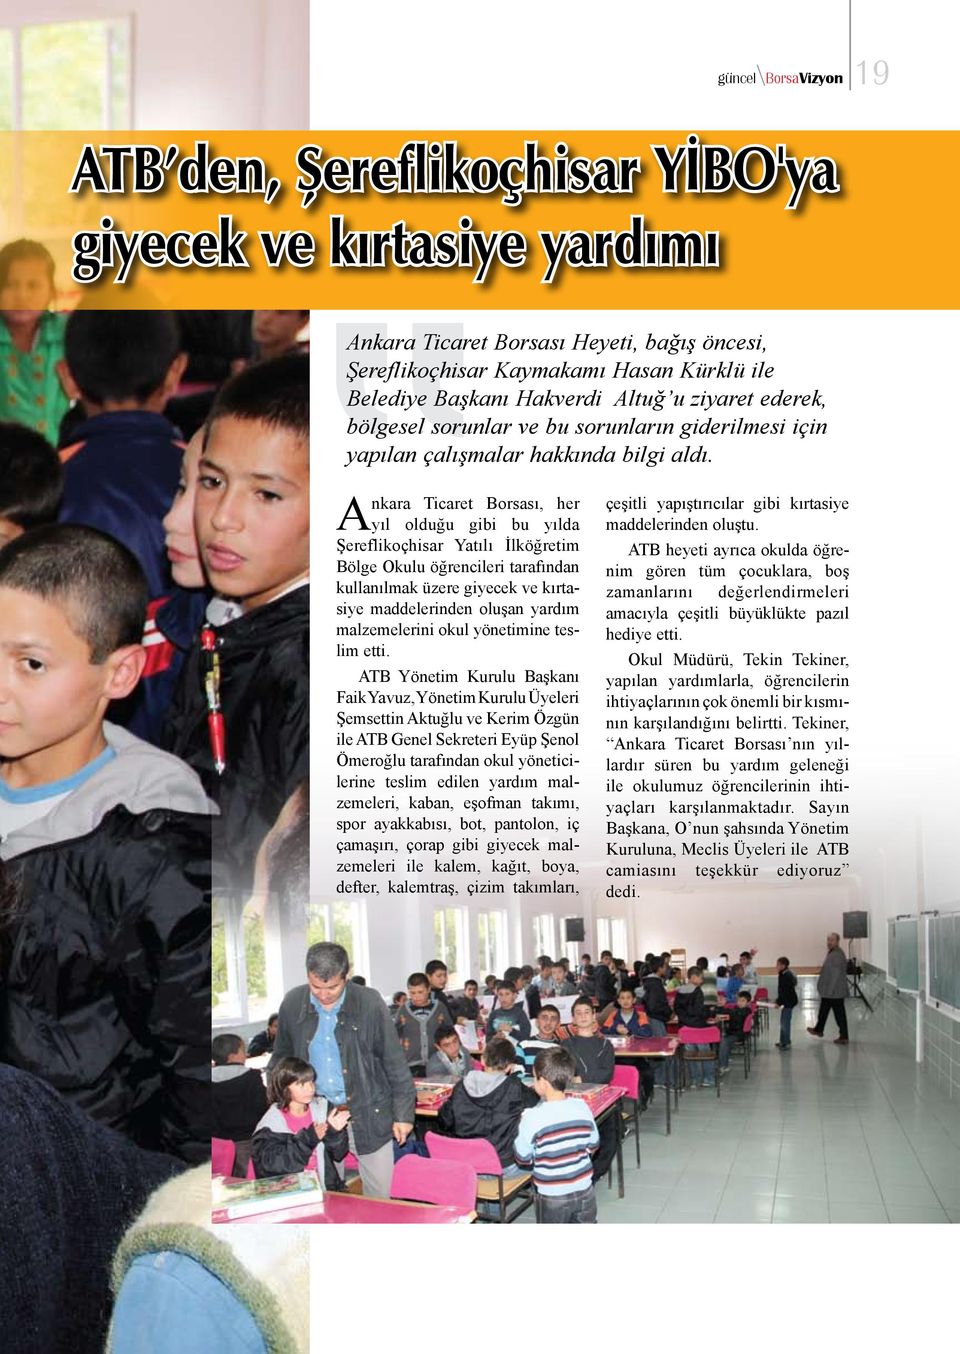 Ankara Ticaret Borsası, her yıl olduğu gibi bu yılda Şereflikoçhisar Yatılı İlköğretim Bölge Okulu öğrencileri tarafından kullanılmak üzere giyecek ve kırtasiye maddelerinden oluşan yardım